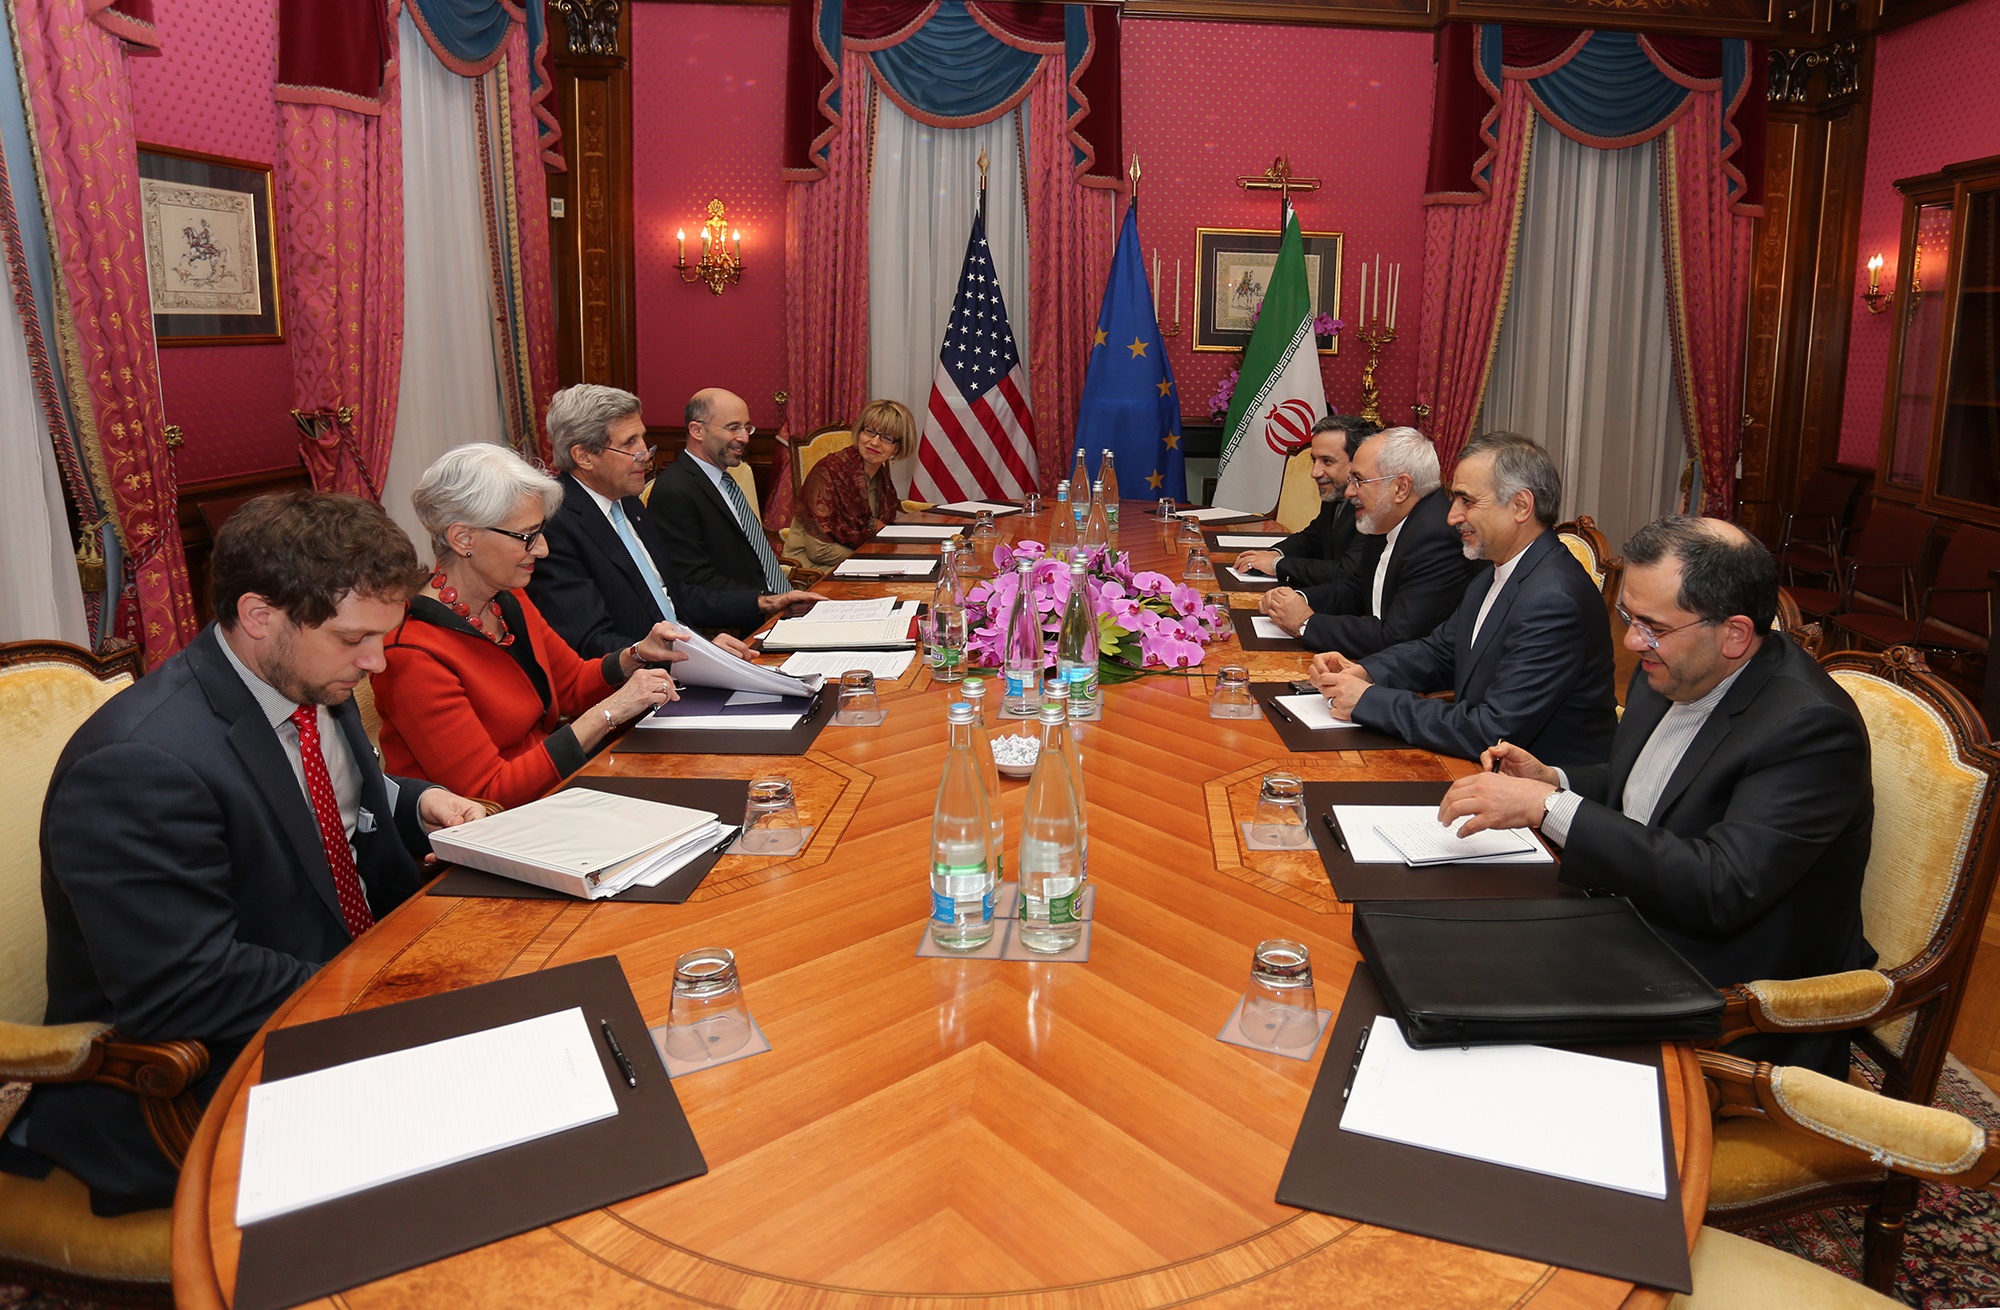 اتحادیه اروپا و آمریکا درباره توافق هسته ای بیانیه صادر کردند: وقتش شده ایران تصمیم بگیرد